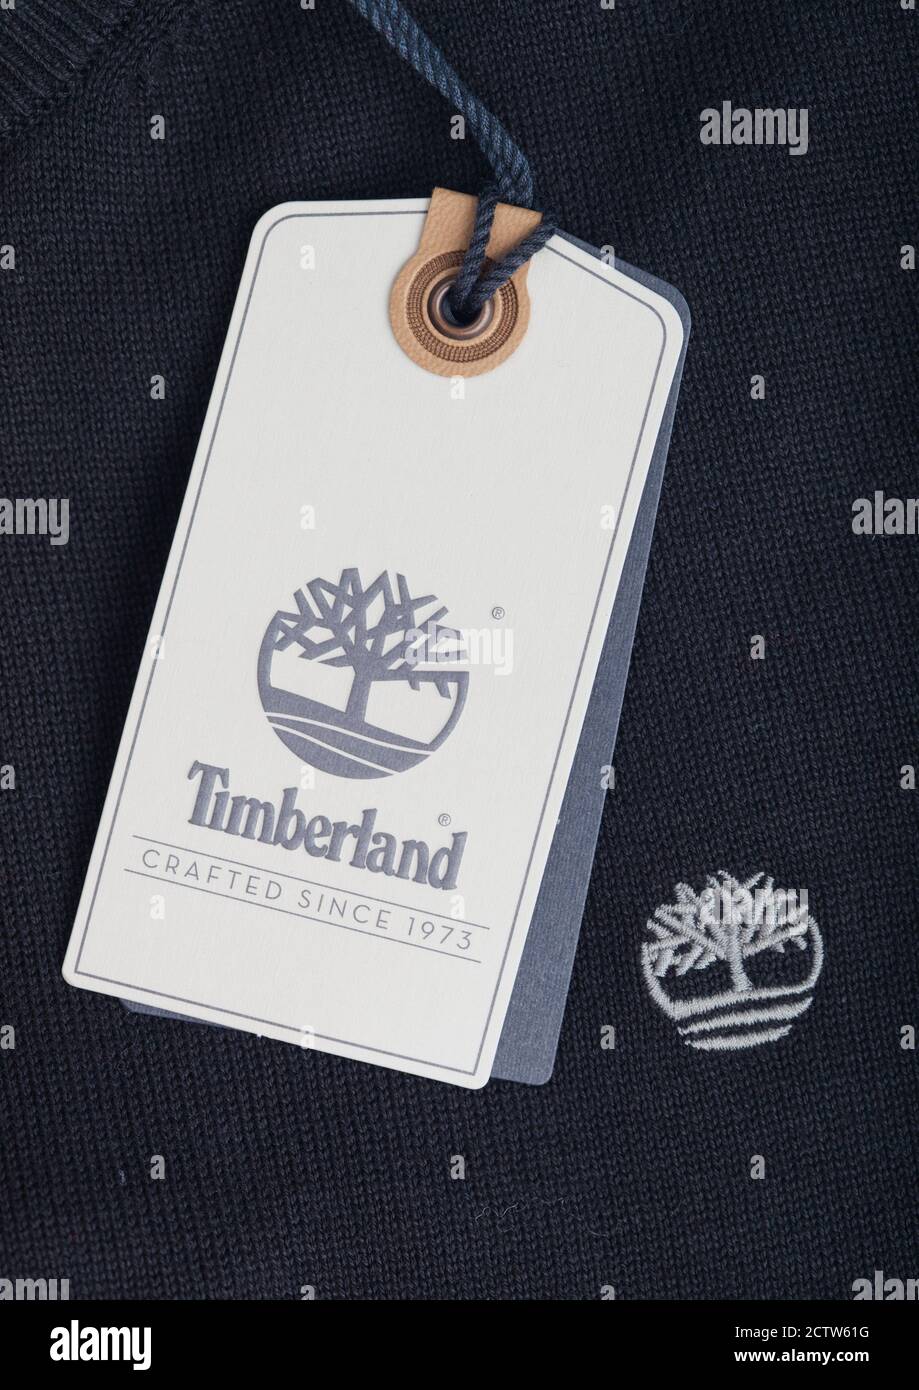 LONDON, UK - SEPTEMBER 09, 2020:Timberland logo clothing tag on black cotton fabric Stock Photo - Alamy